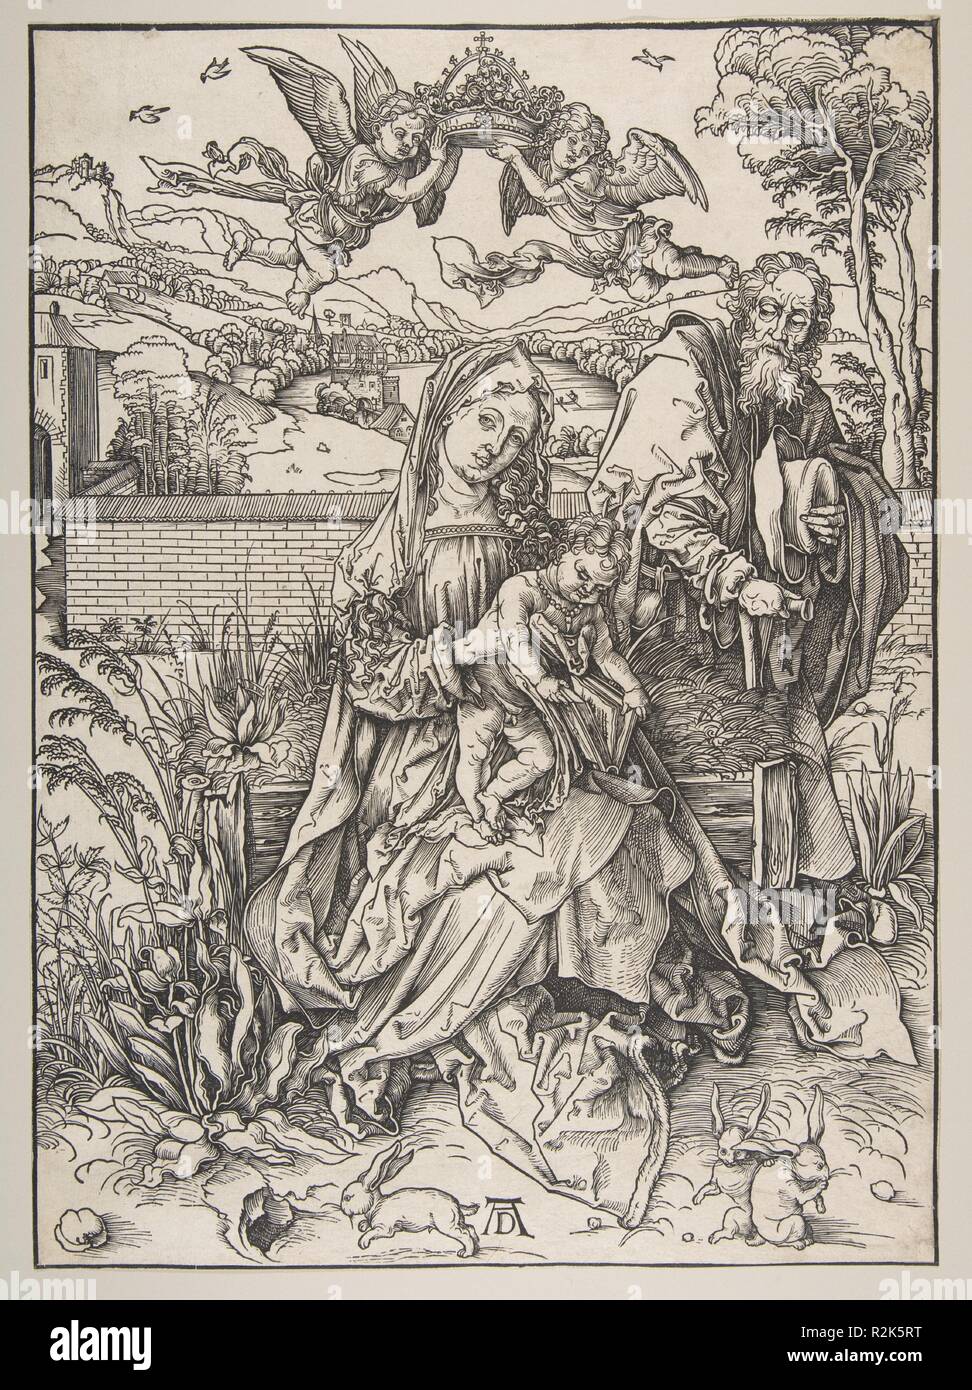 La Sainte Famille avec trois lièvres. Artiste : Albrecht Dürer (Nuremberg, Allemagne Nuremberg 1471-1528). Dimensions : image : 15 1/8 x 11 in. (38,4 x 27,9 cm) taillés en ligne de bloc. Date : ca. 1497-98. Musée : Metropolitan Museum of Art, New York, USA. Banque D'Images